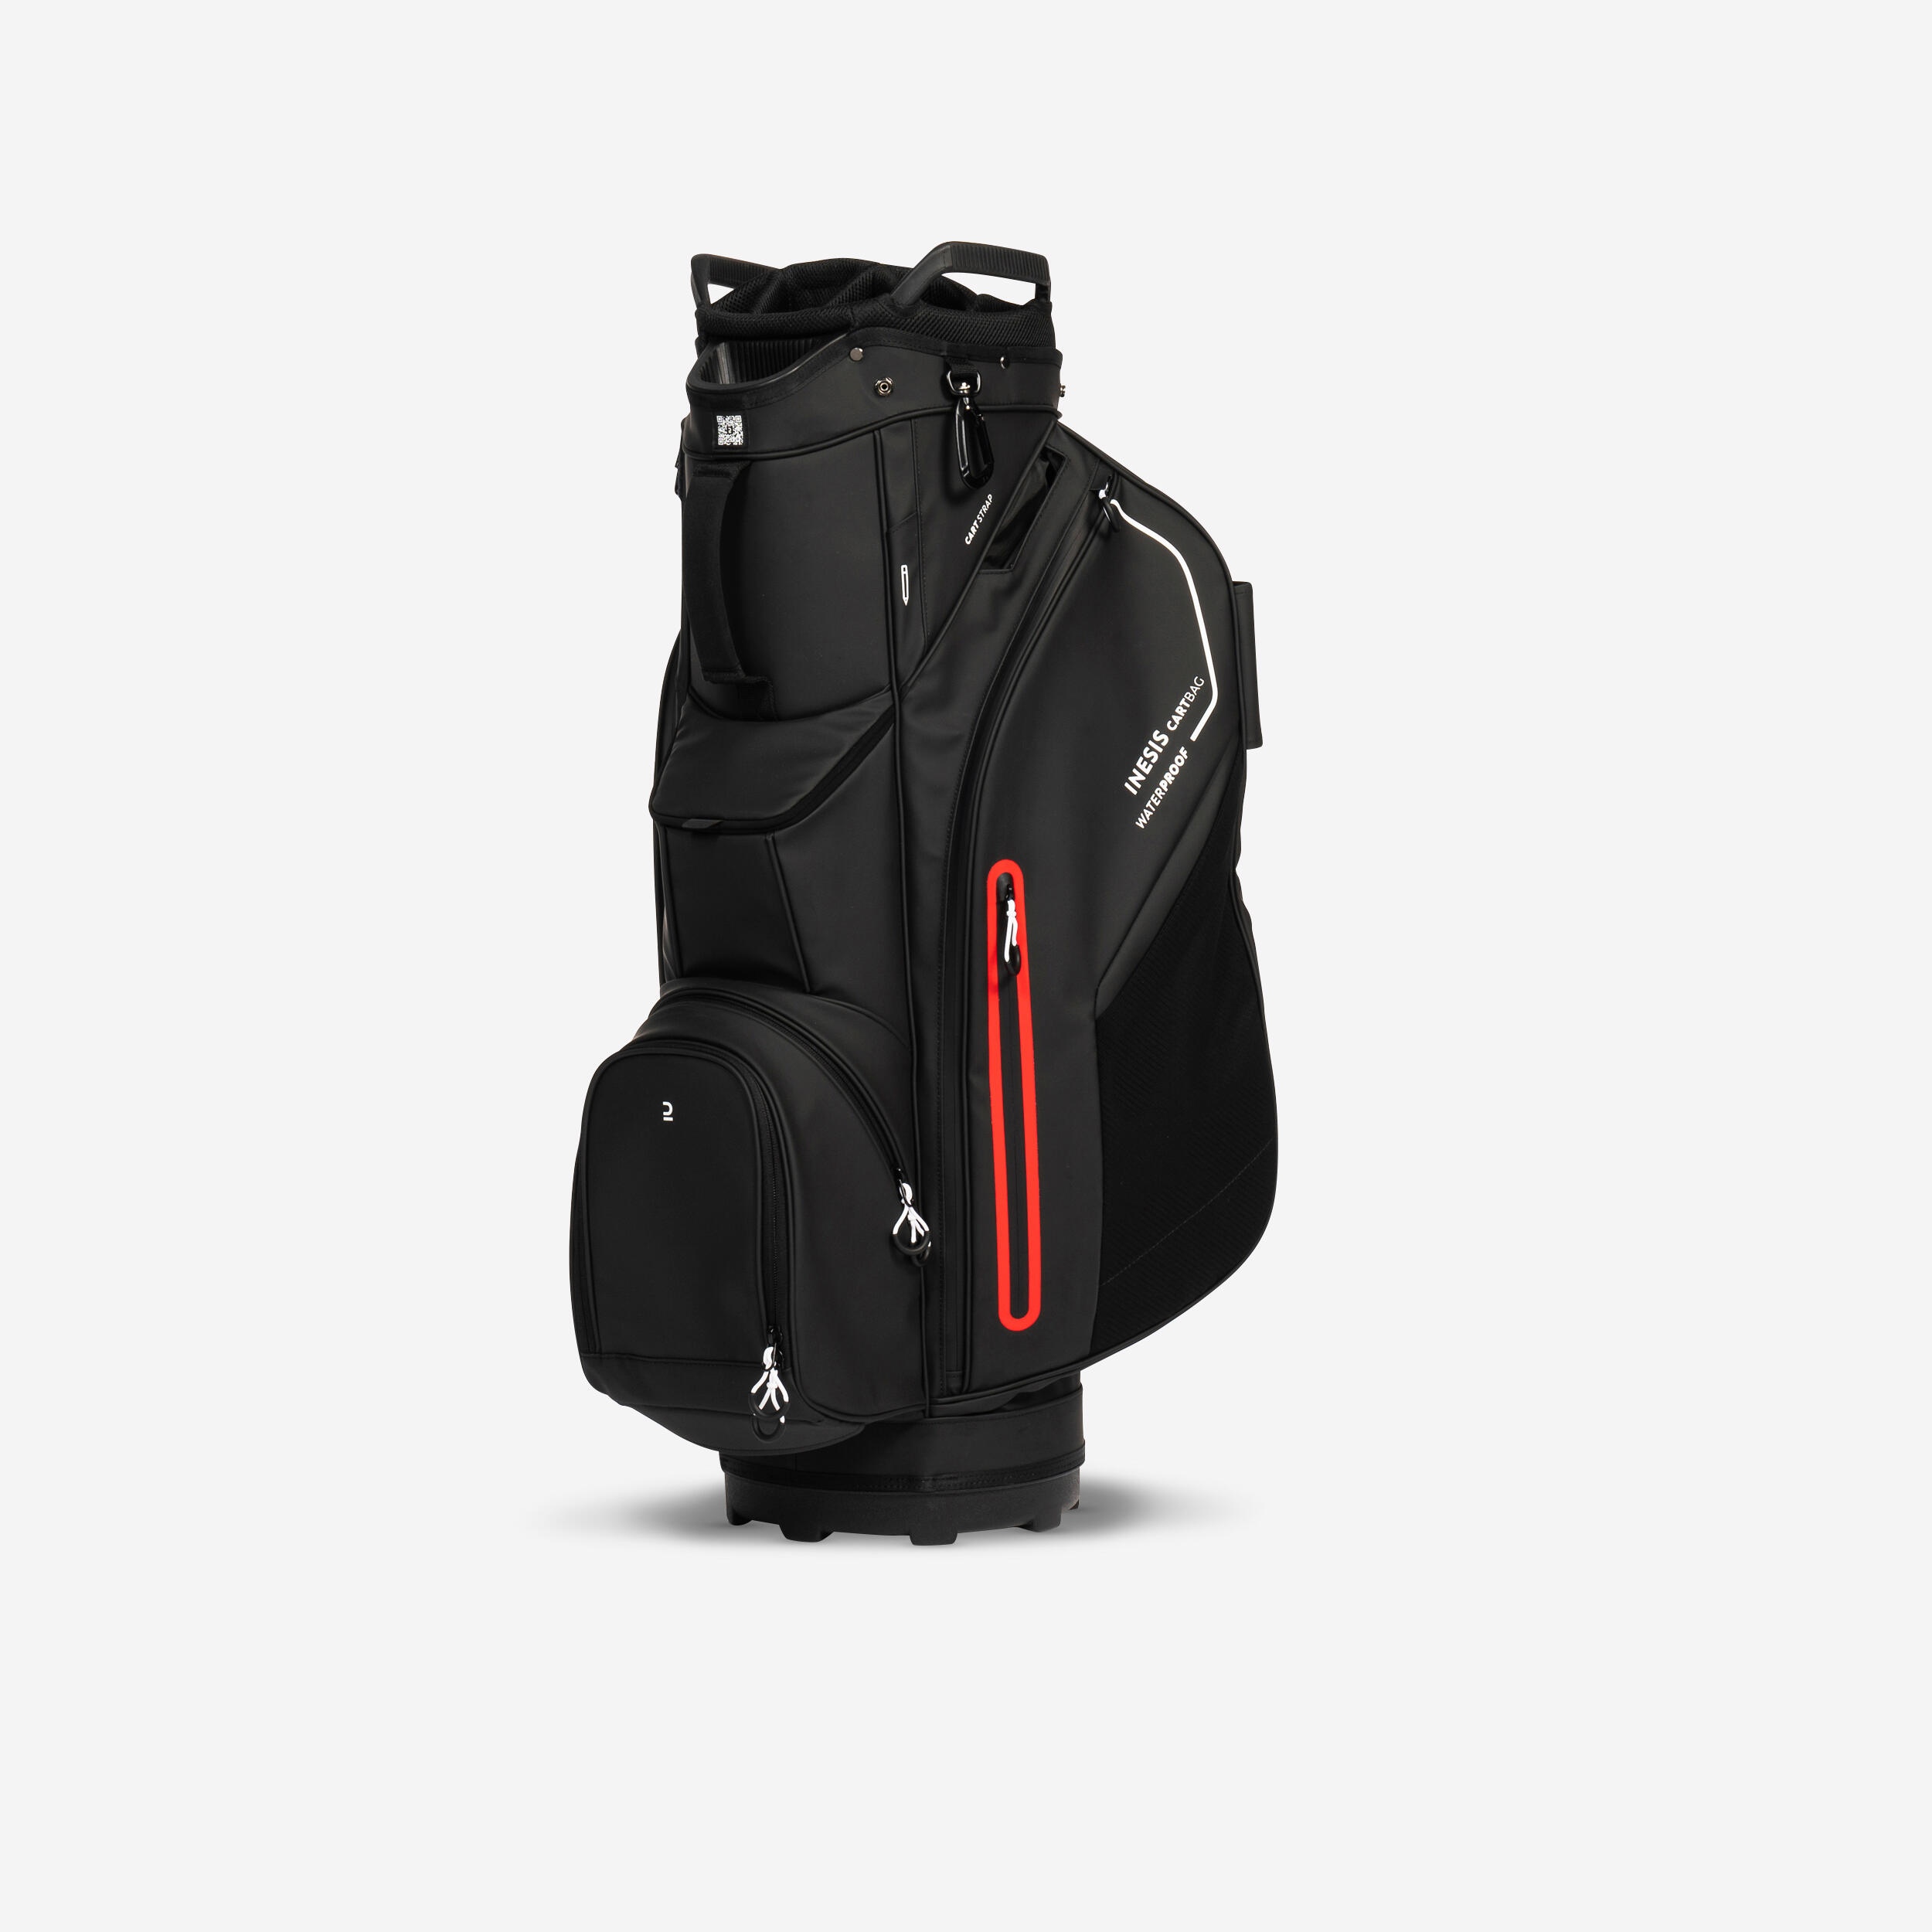 INESIS Golf trolley bag waterproof – INESIS cart black